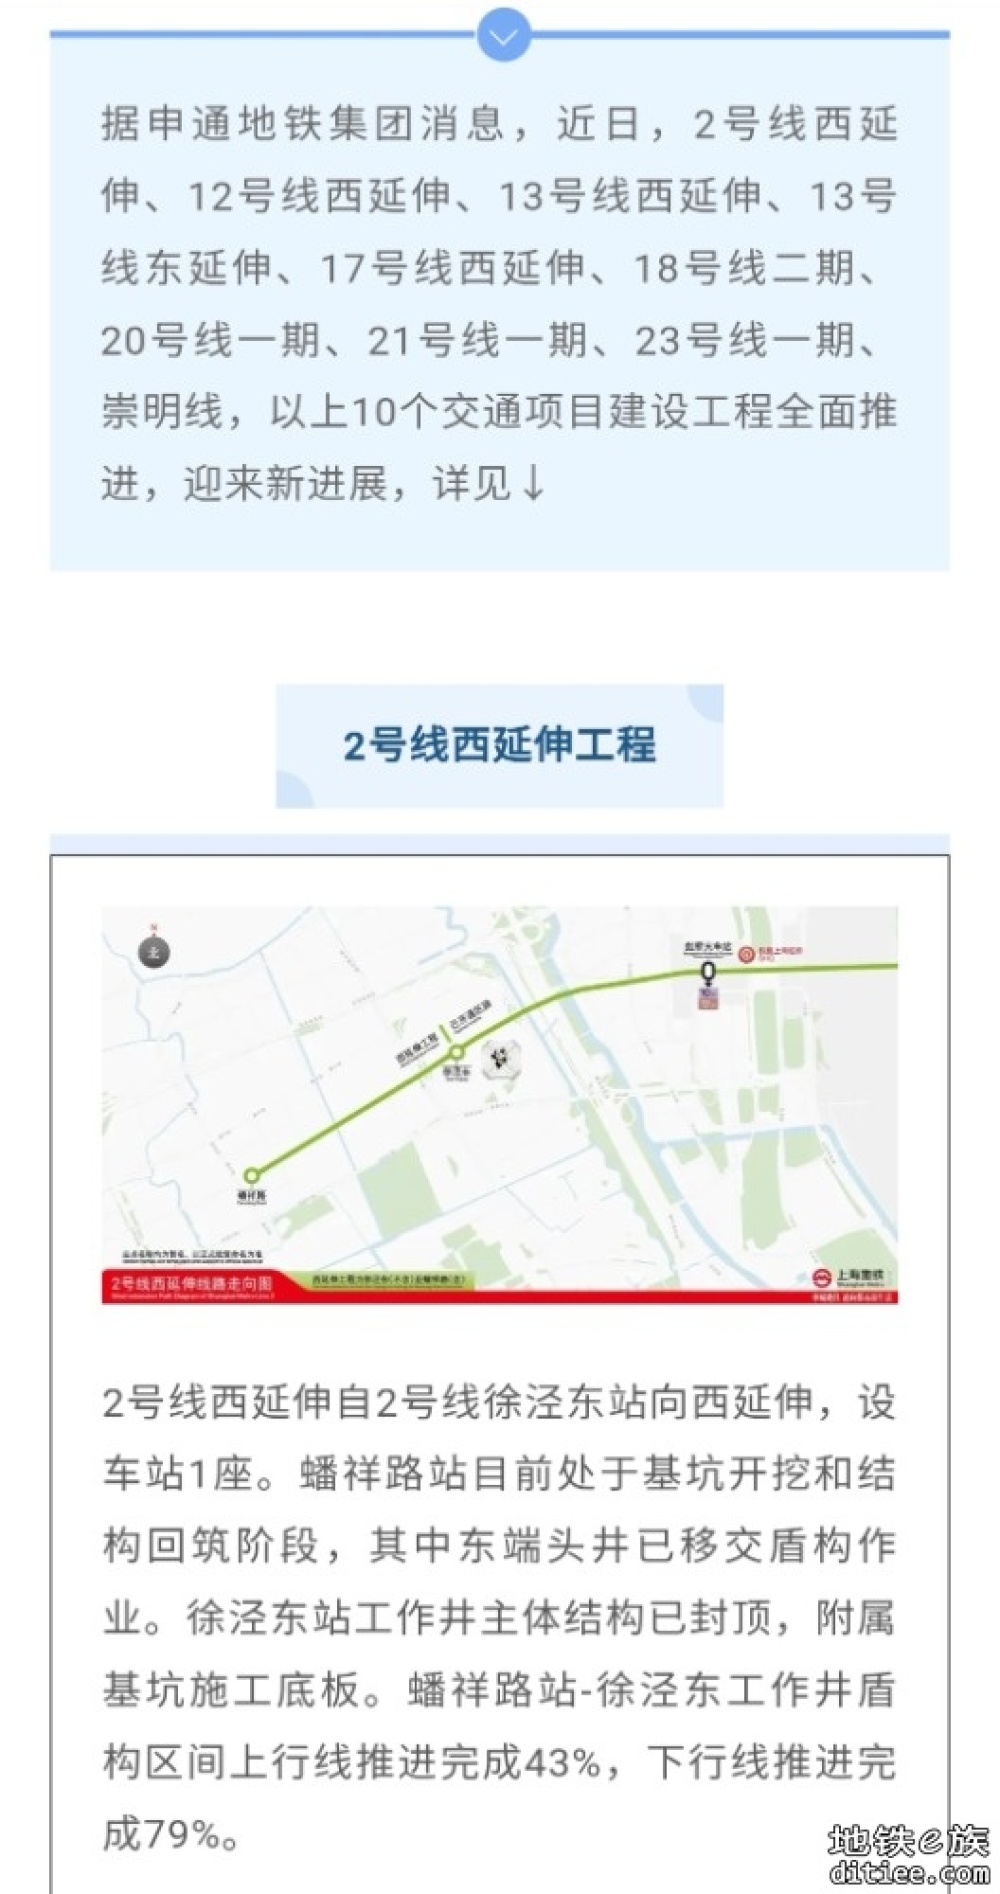 上海10条轨道交通线路正在建设中